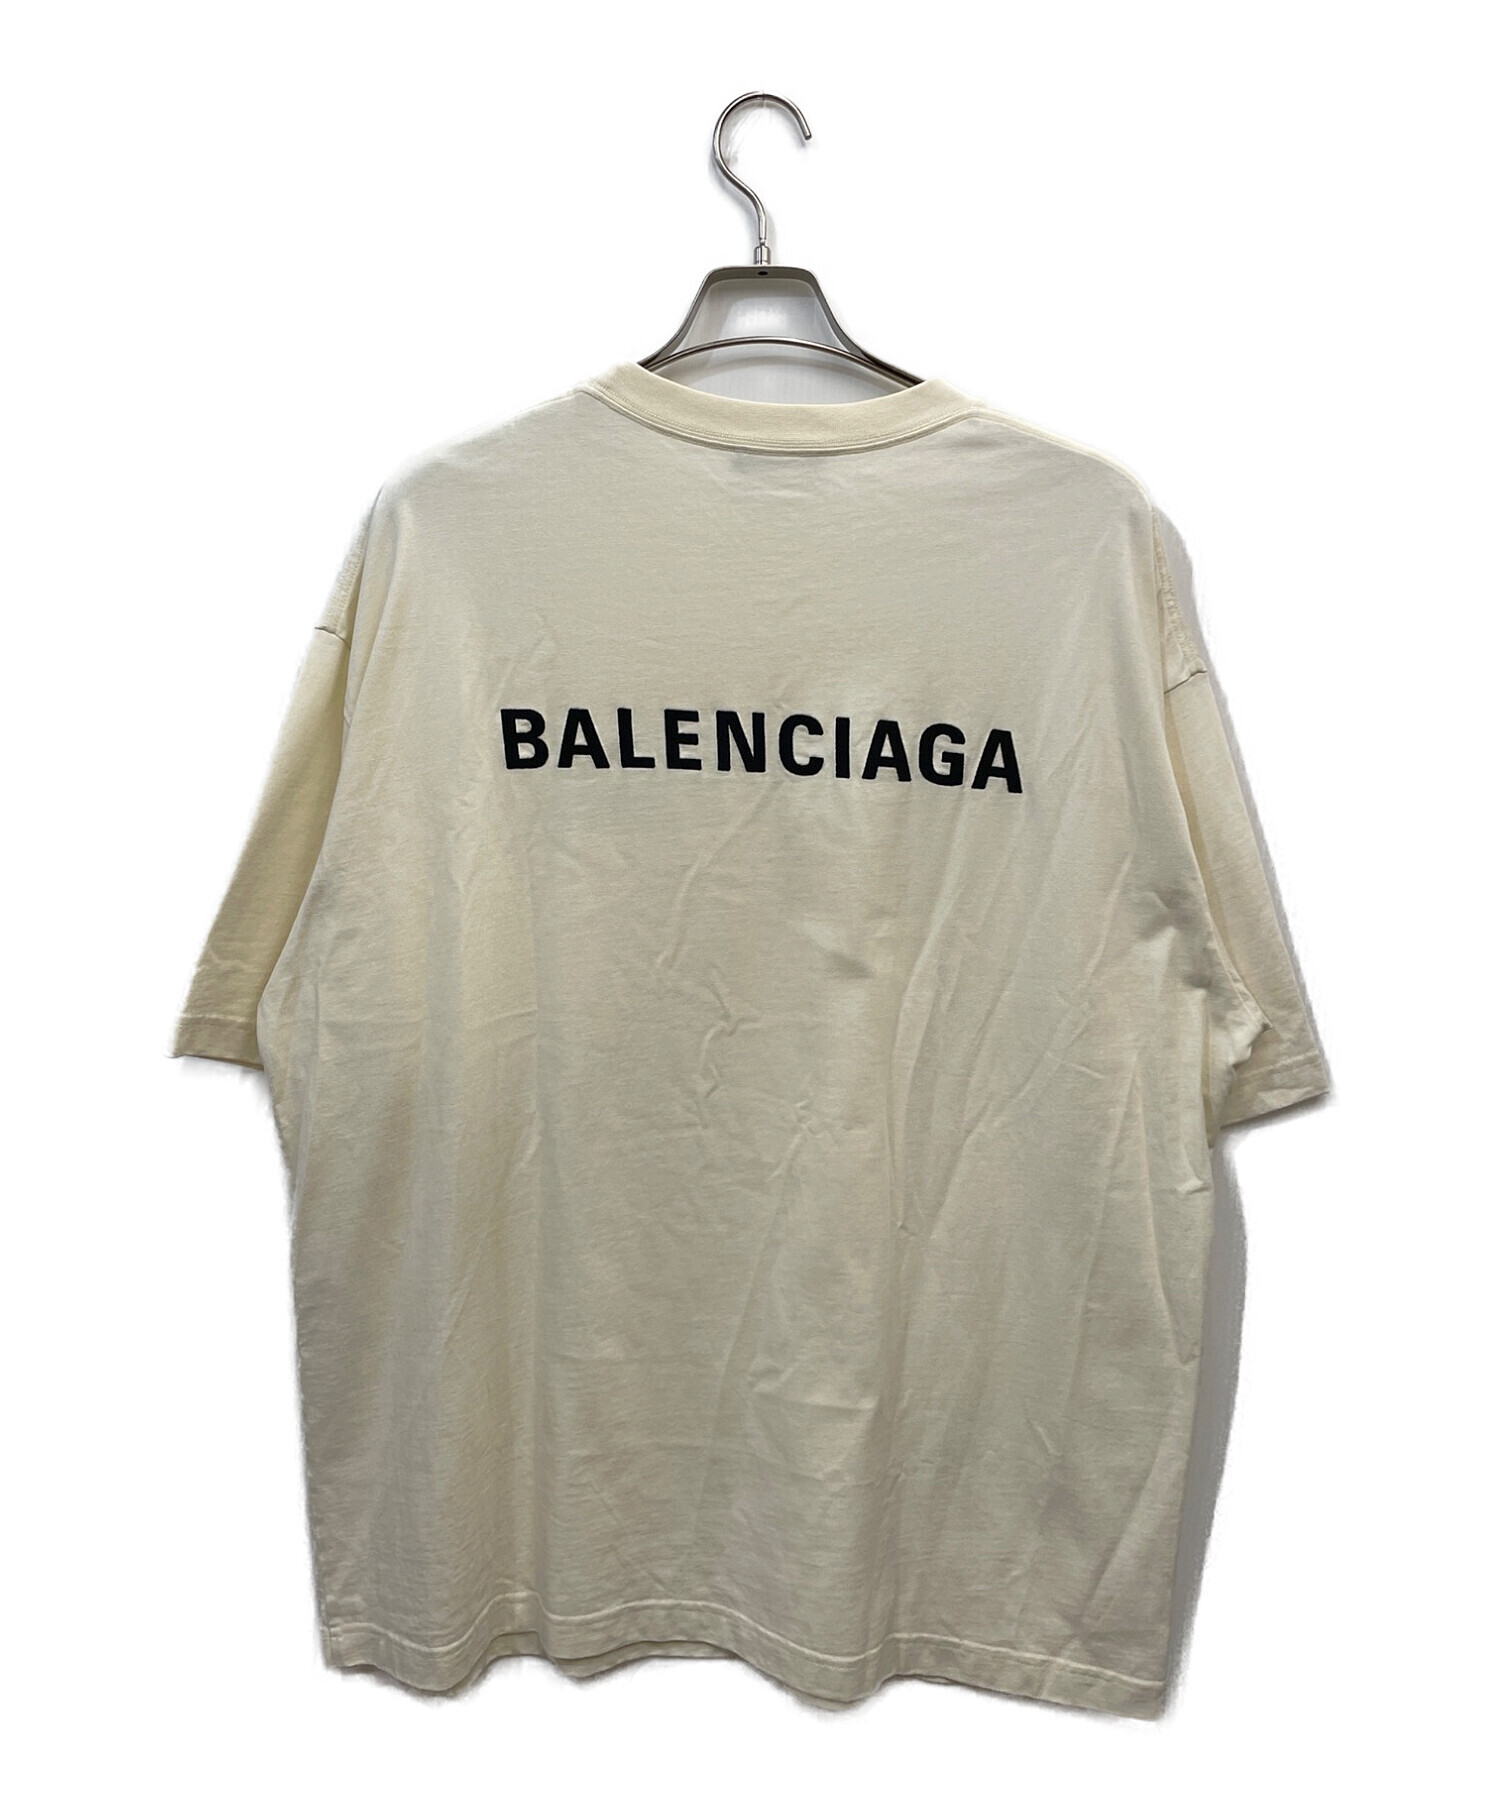 バレンシアガ オーバーサイズTシャツ 小文字ロゴ サイズL未使用カラーブラック